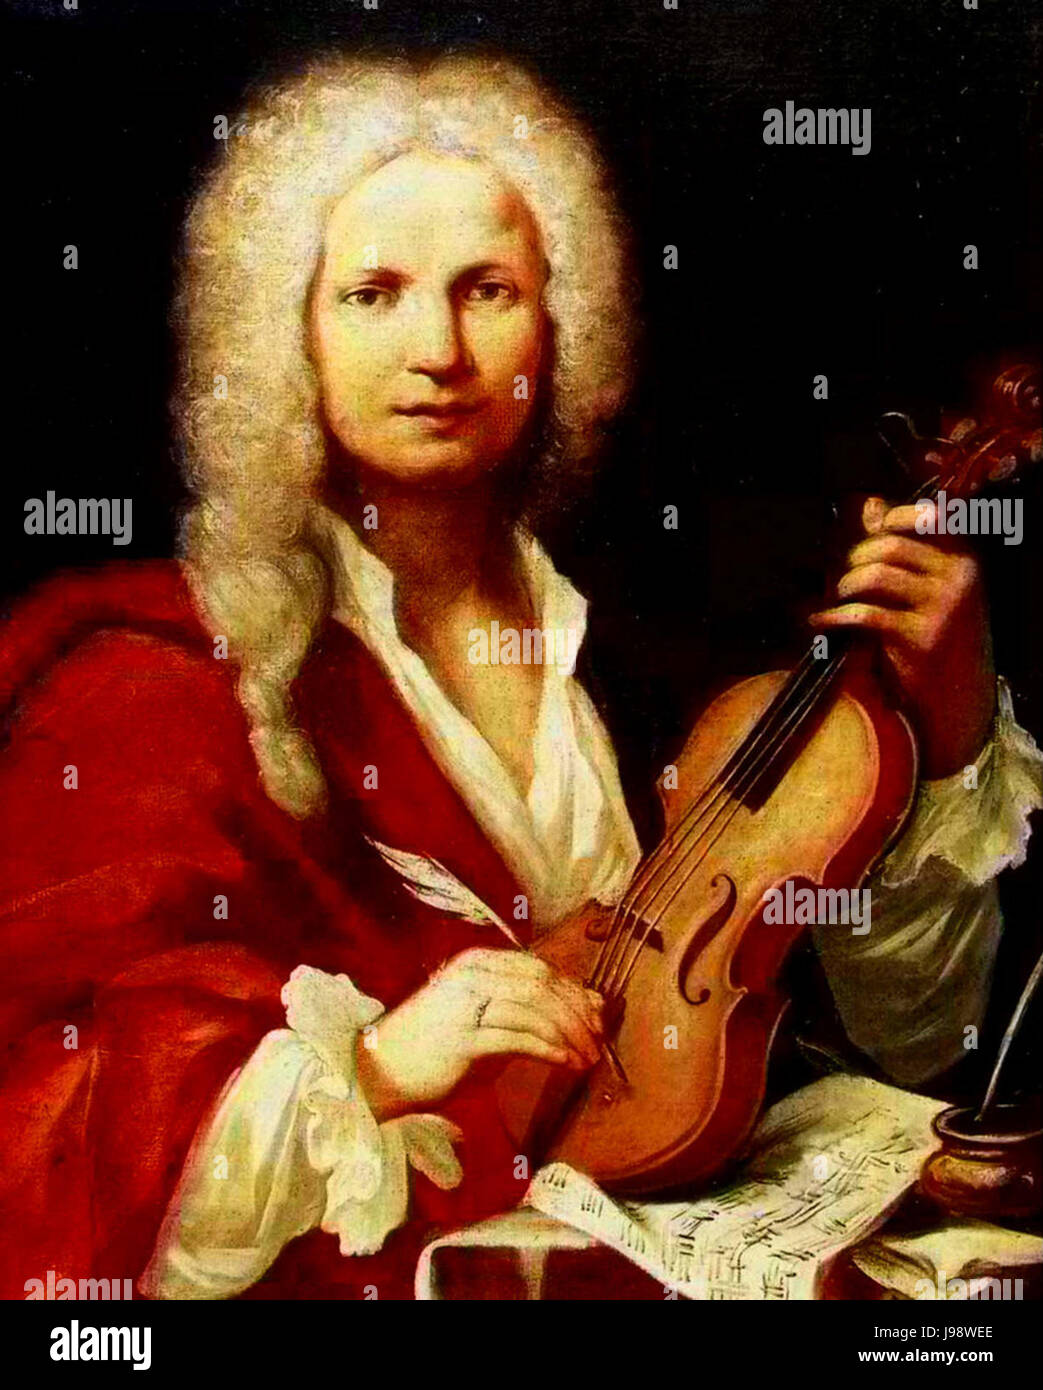 Antonio Vivaldi portrait Stock Photo